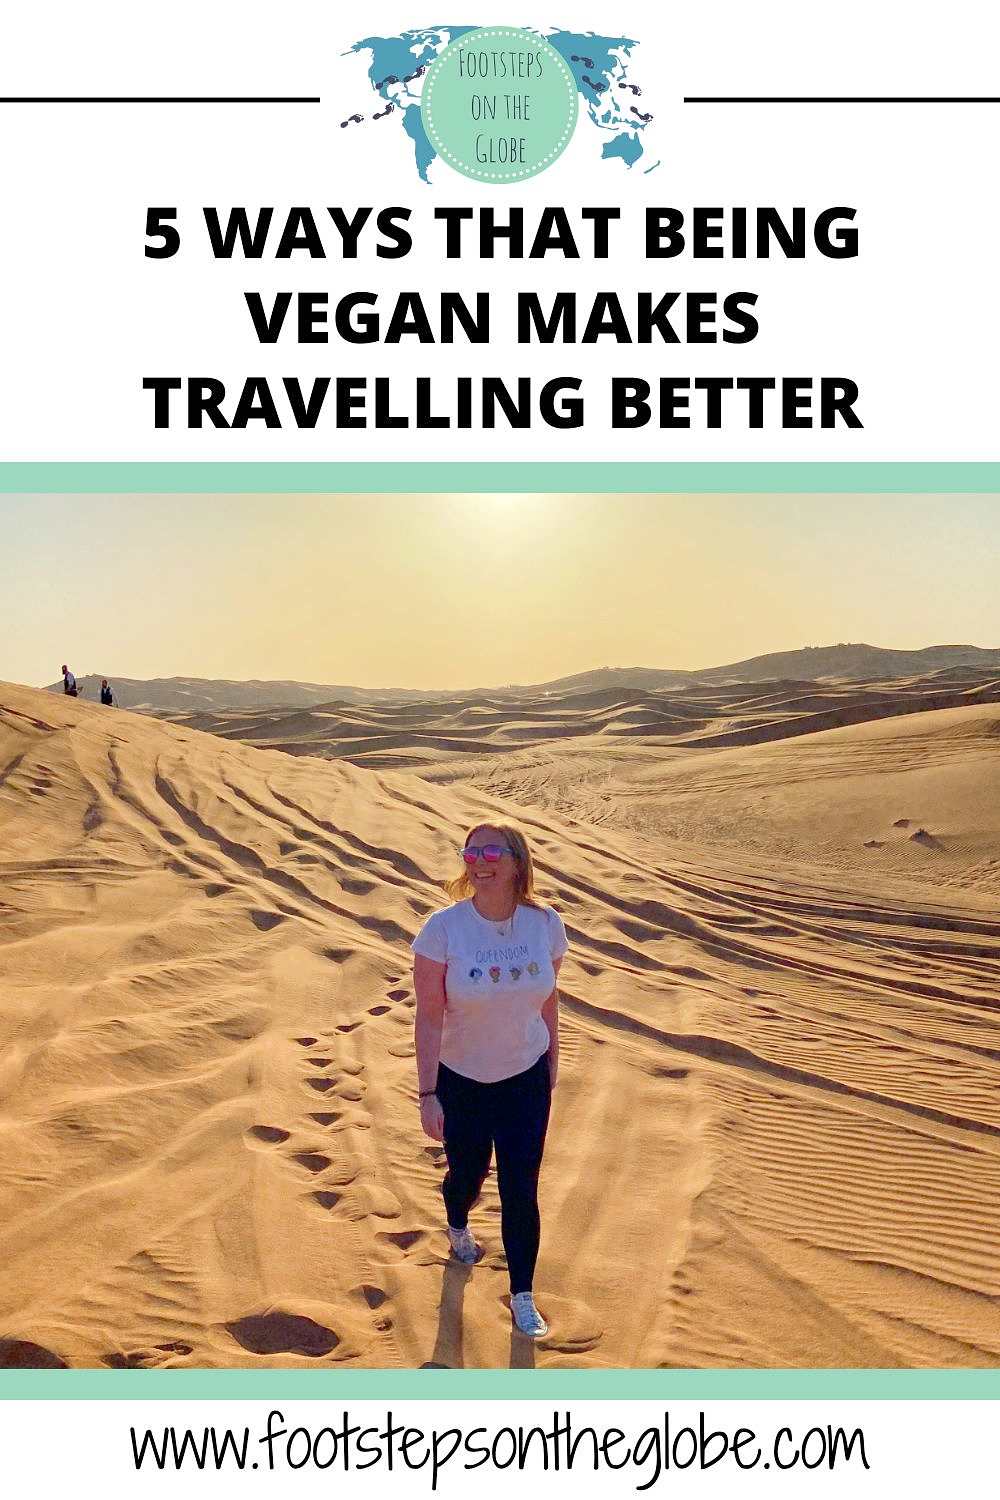 Mel walking through the desert in Dubai at dusk pinterest image for 5 ways being vegan makes travelling better